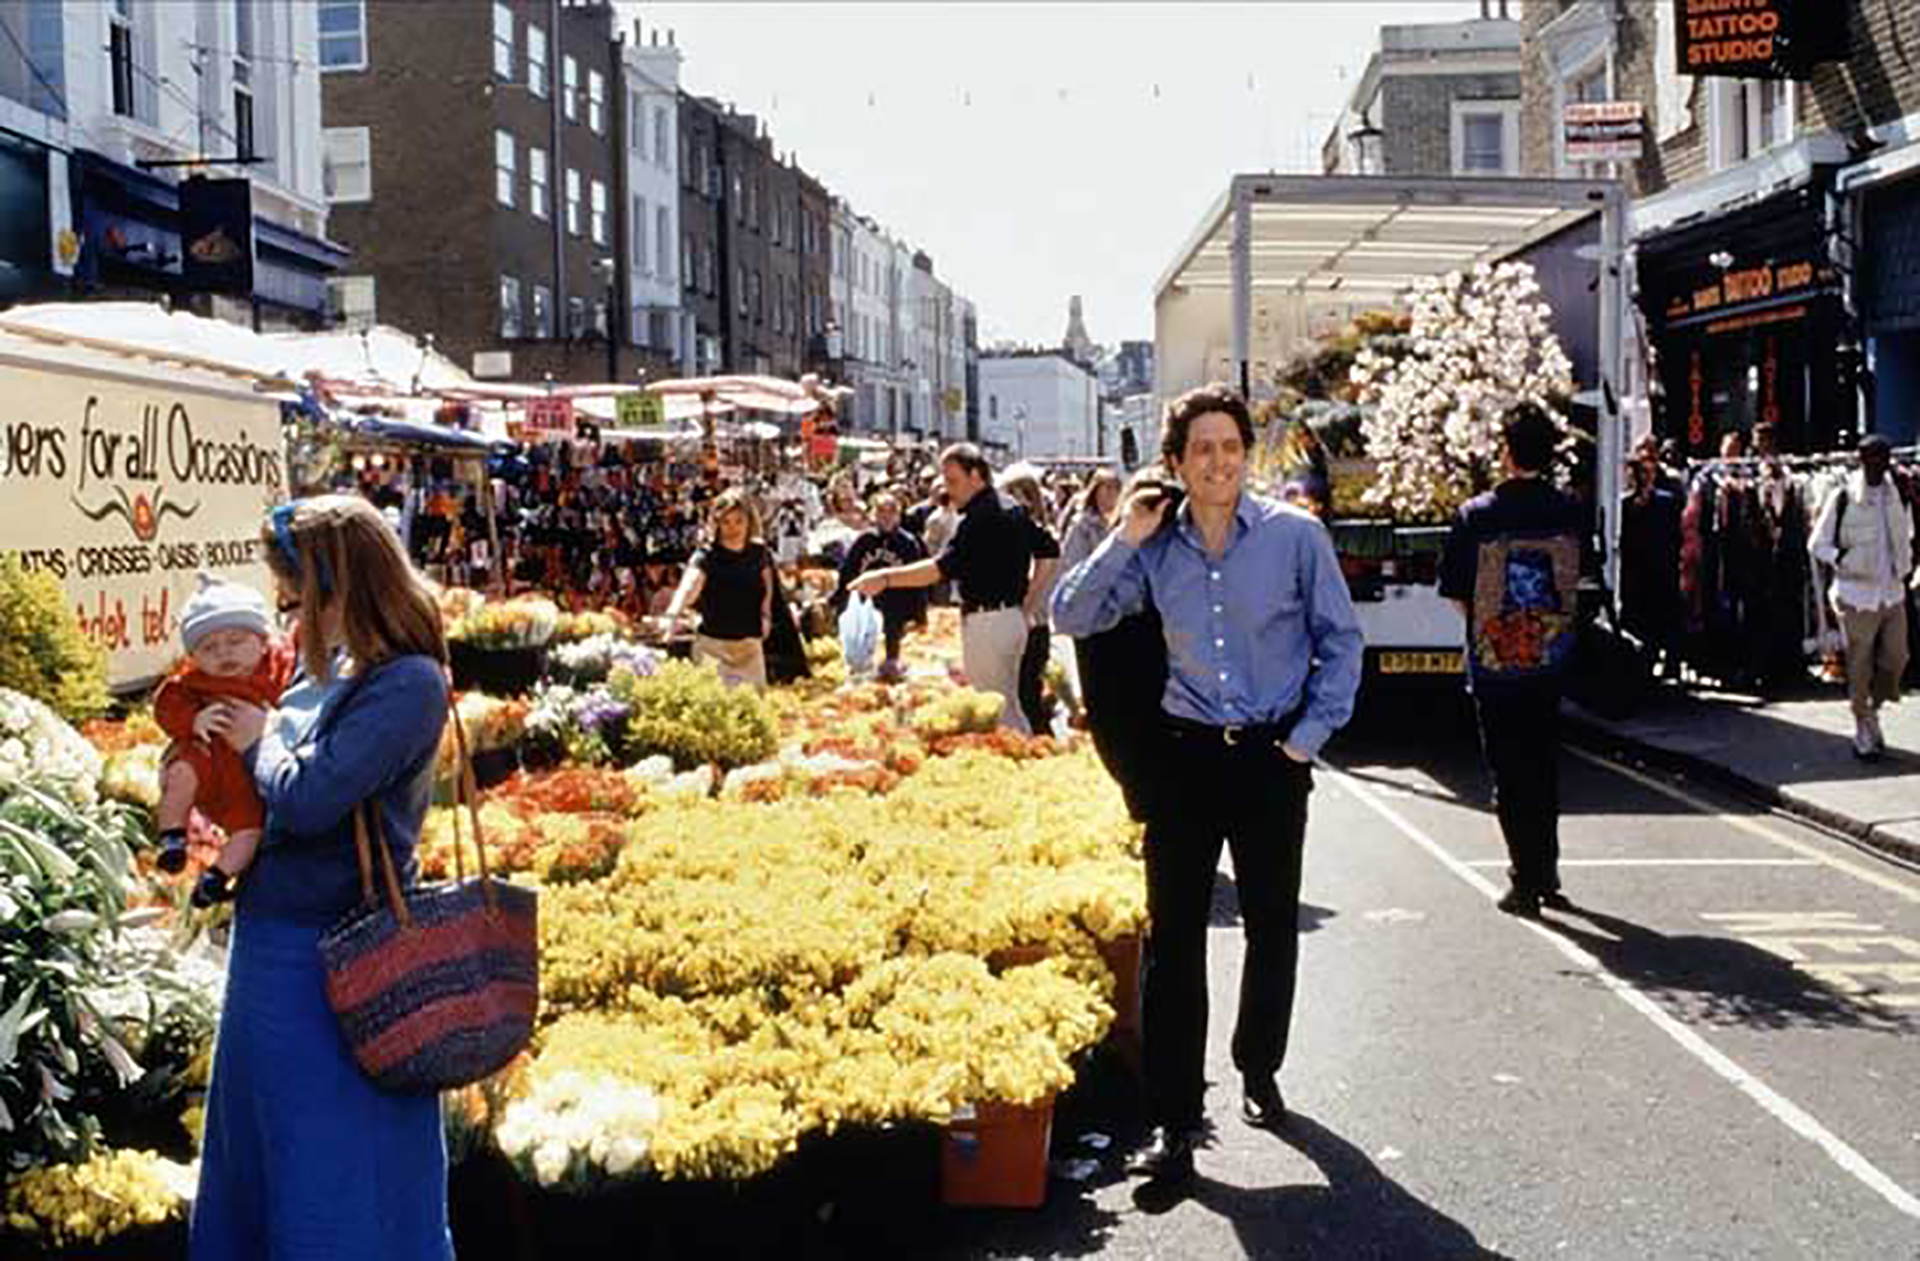 La película comienza con William (Hugh Grant) caminando desde su librería por la calle de Portobello mientras se le escucha decir “Notting Hill, mi zona favorita de Londres”